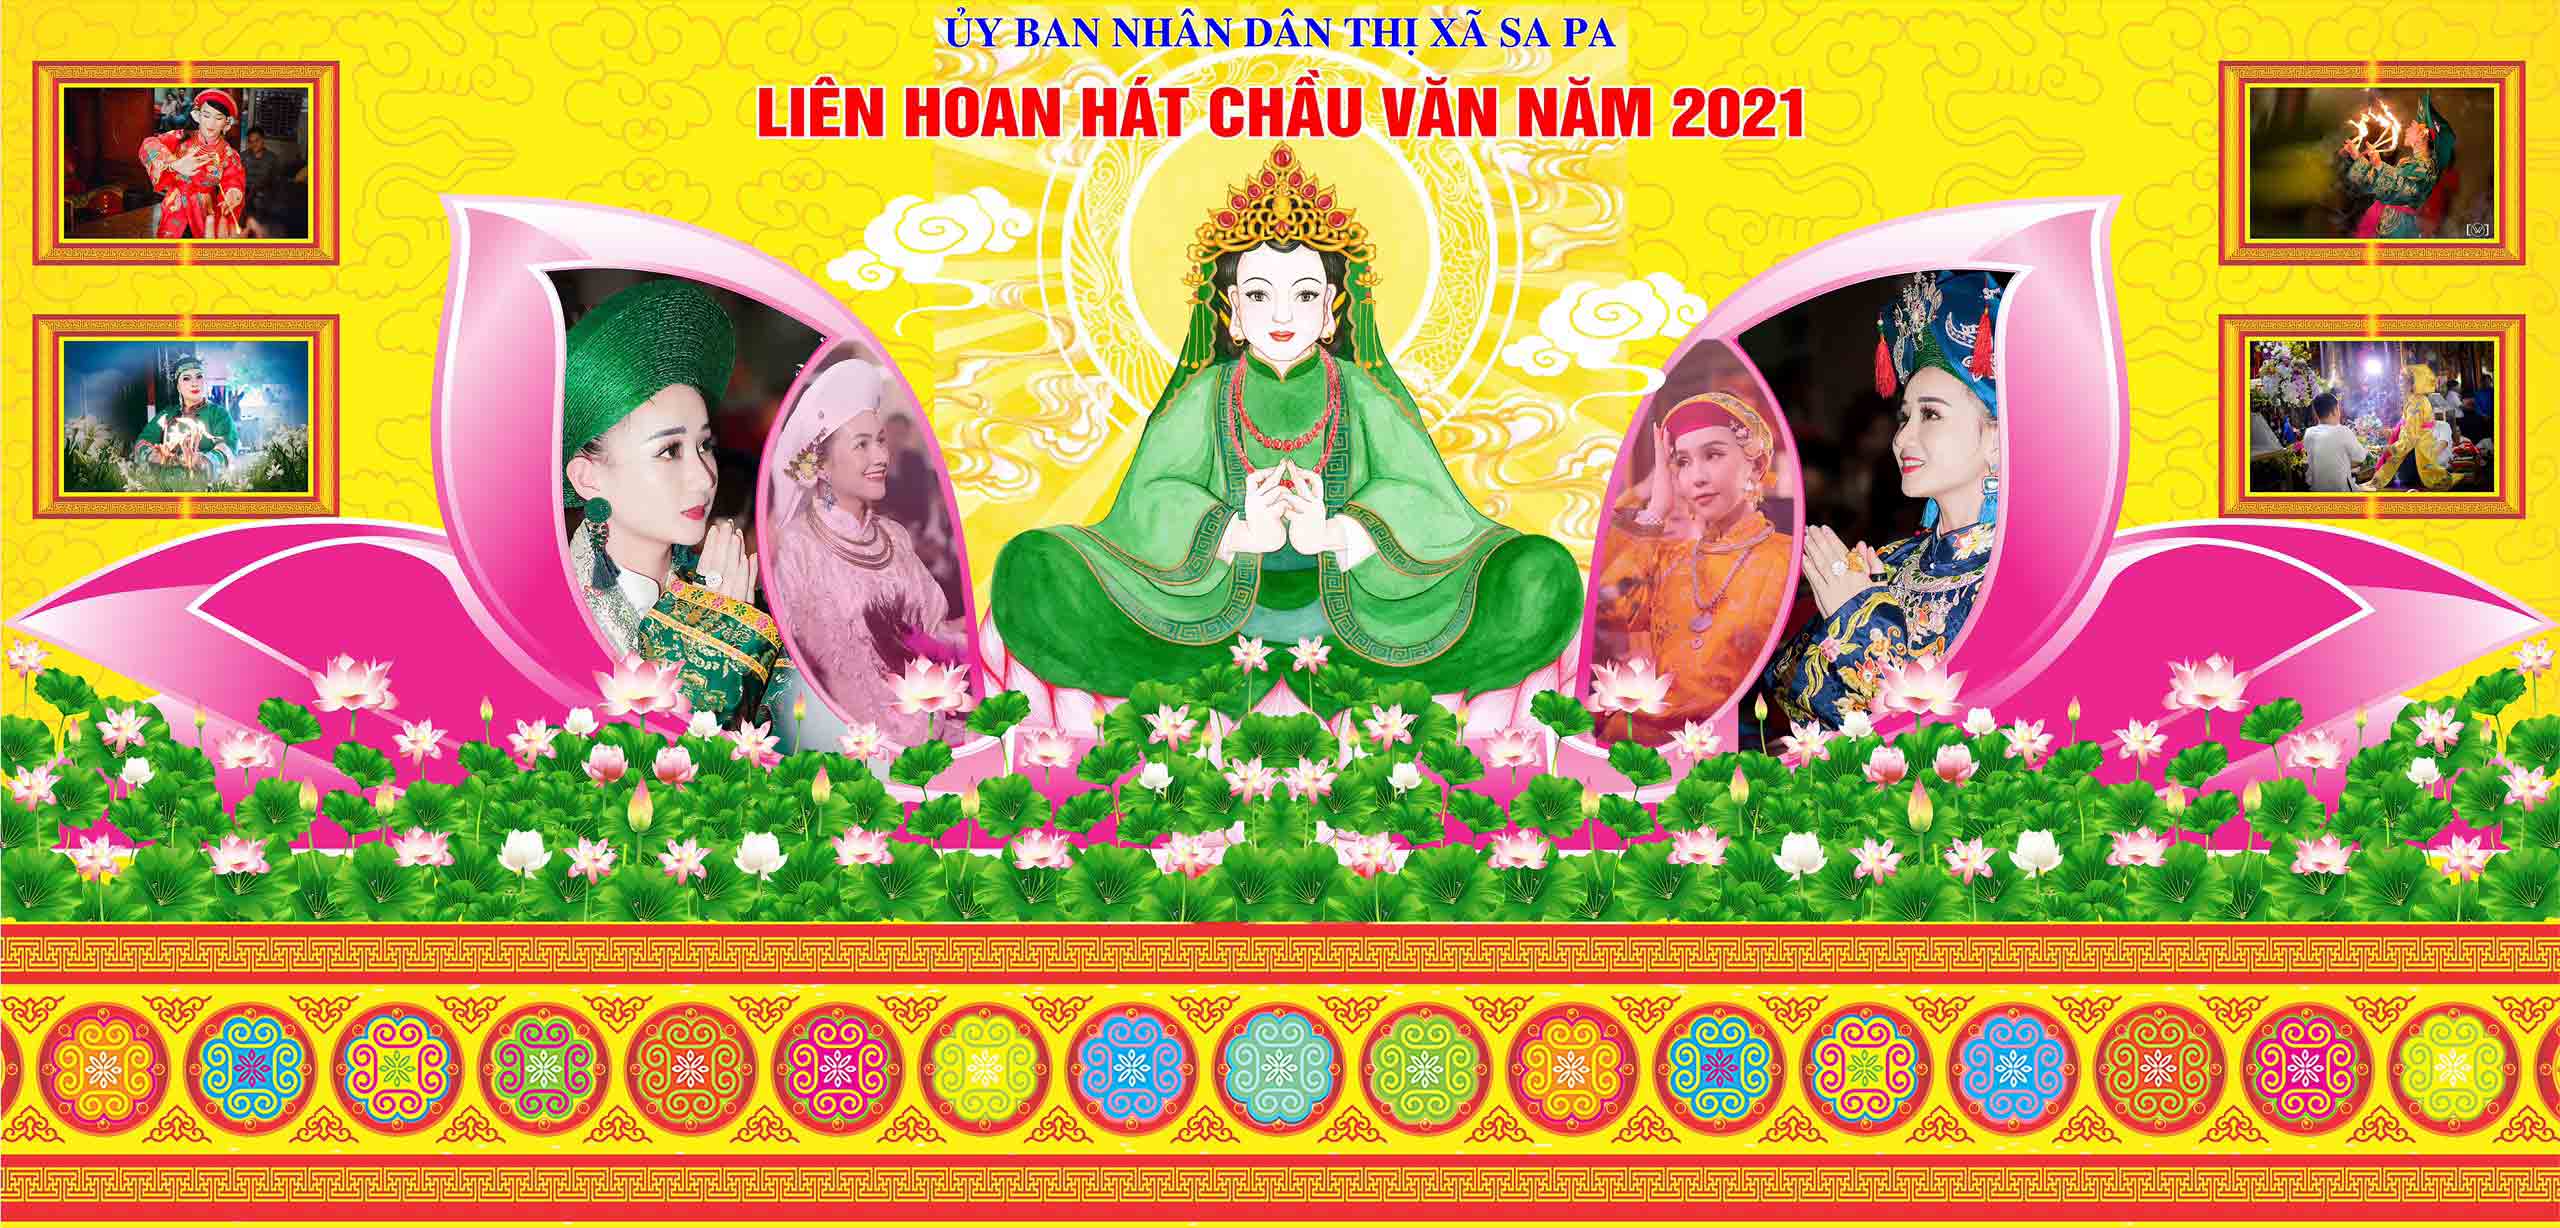 Tuần Lễ hội Đền Mẫu Thượng sẽ diễn ra từ ngày 9 đến 14 tháng 4 năm 2021.